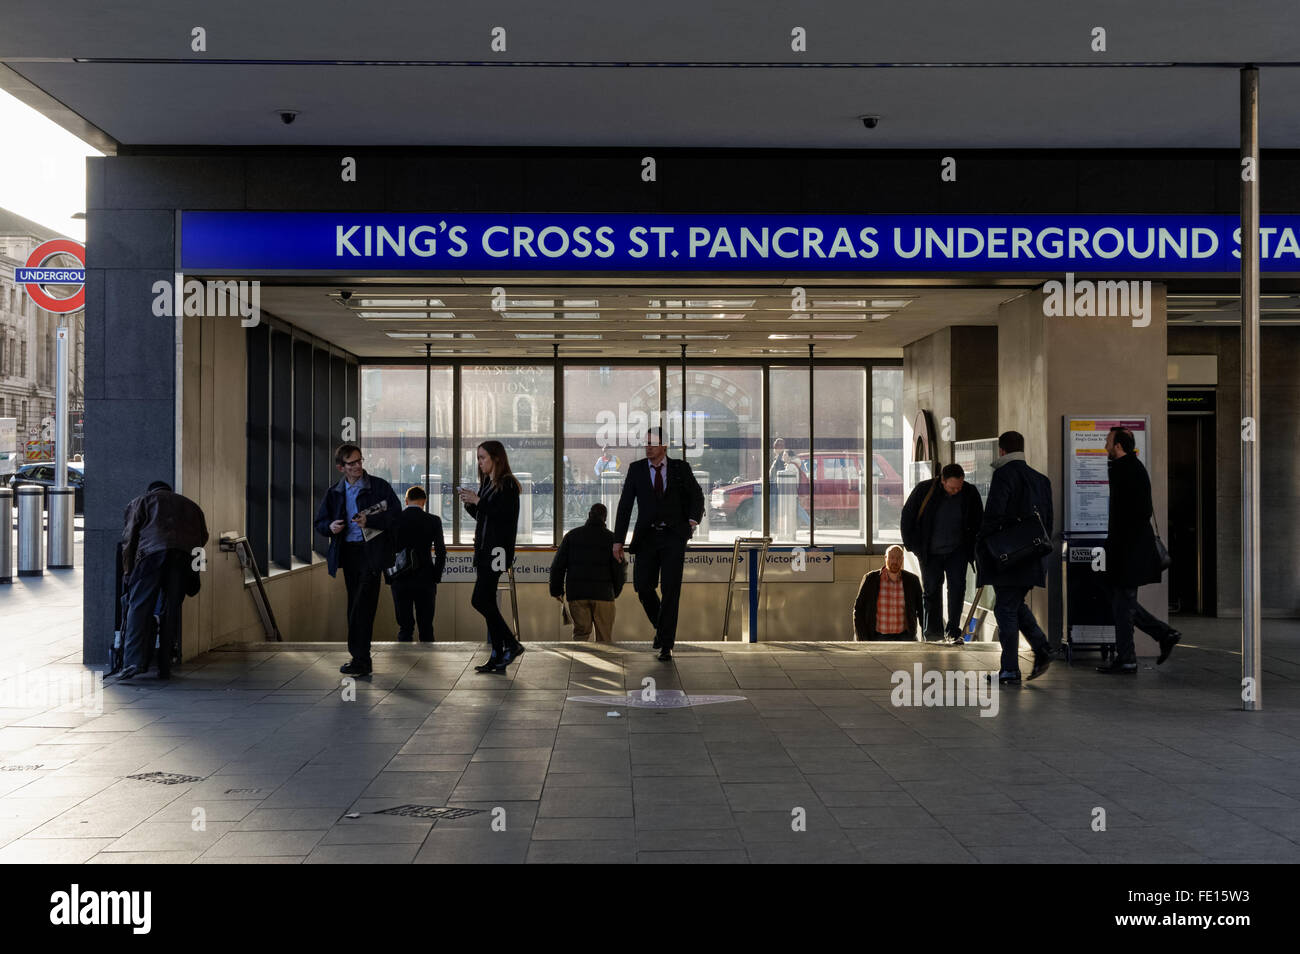 Entrée de la King's Cross St Pancras tube station, London England Royaume-Uni UK Banque D'Images